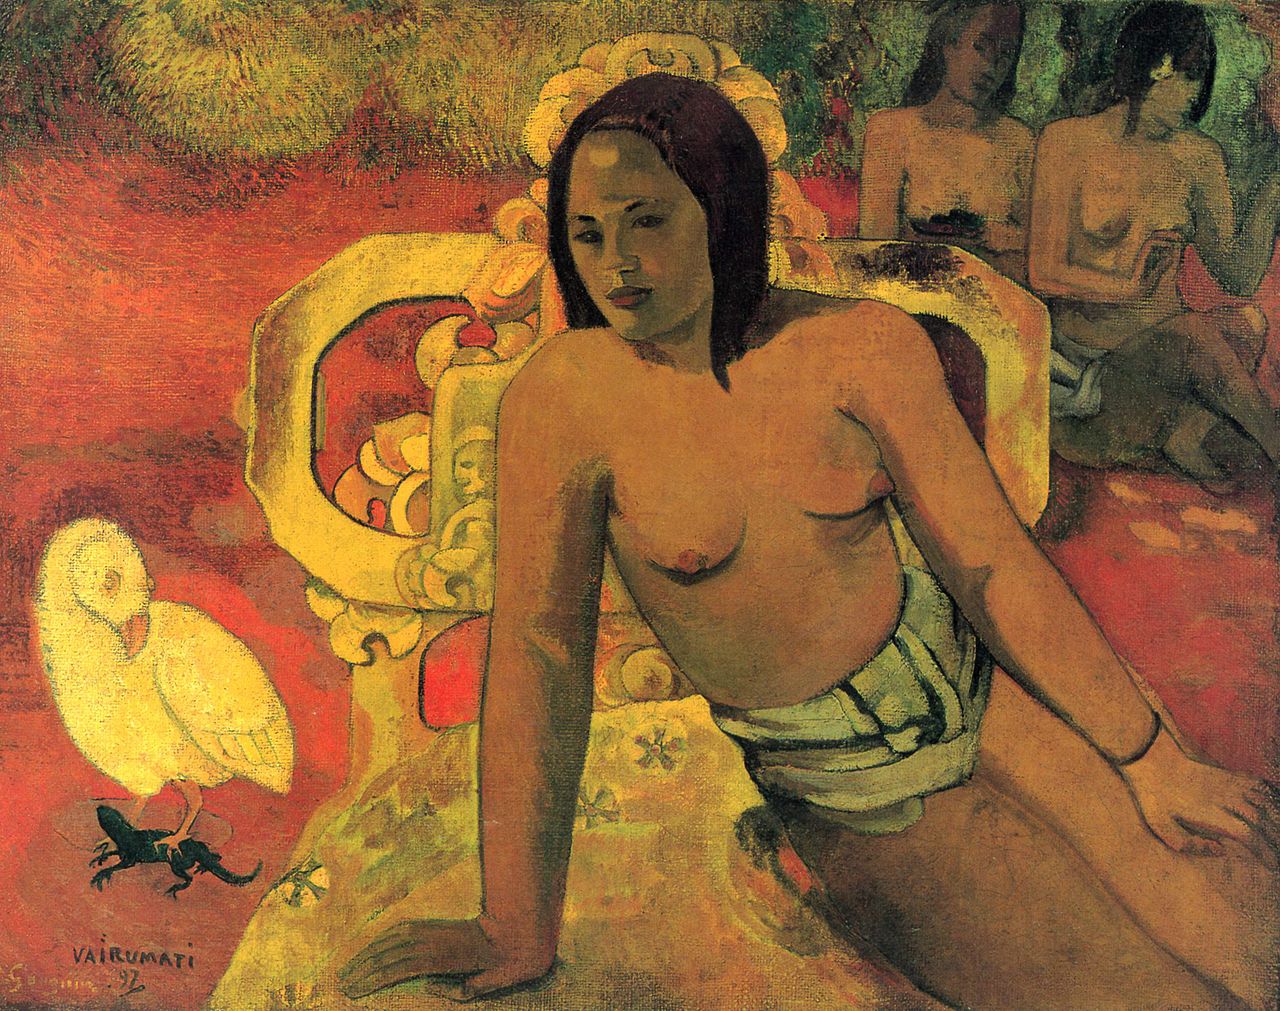 Paul+Gauguin-1848-1903 (385).jpg